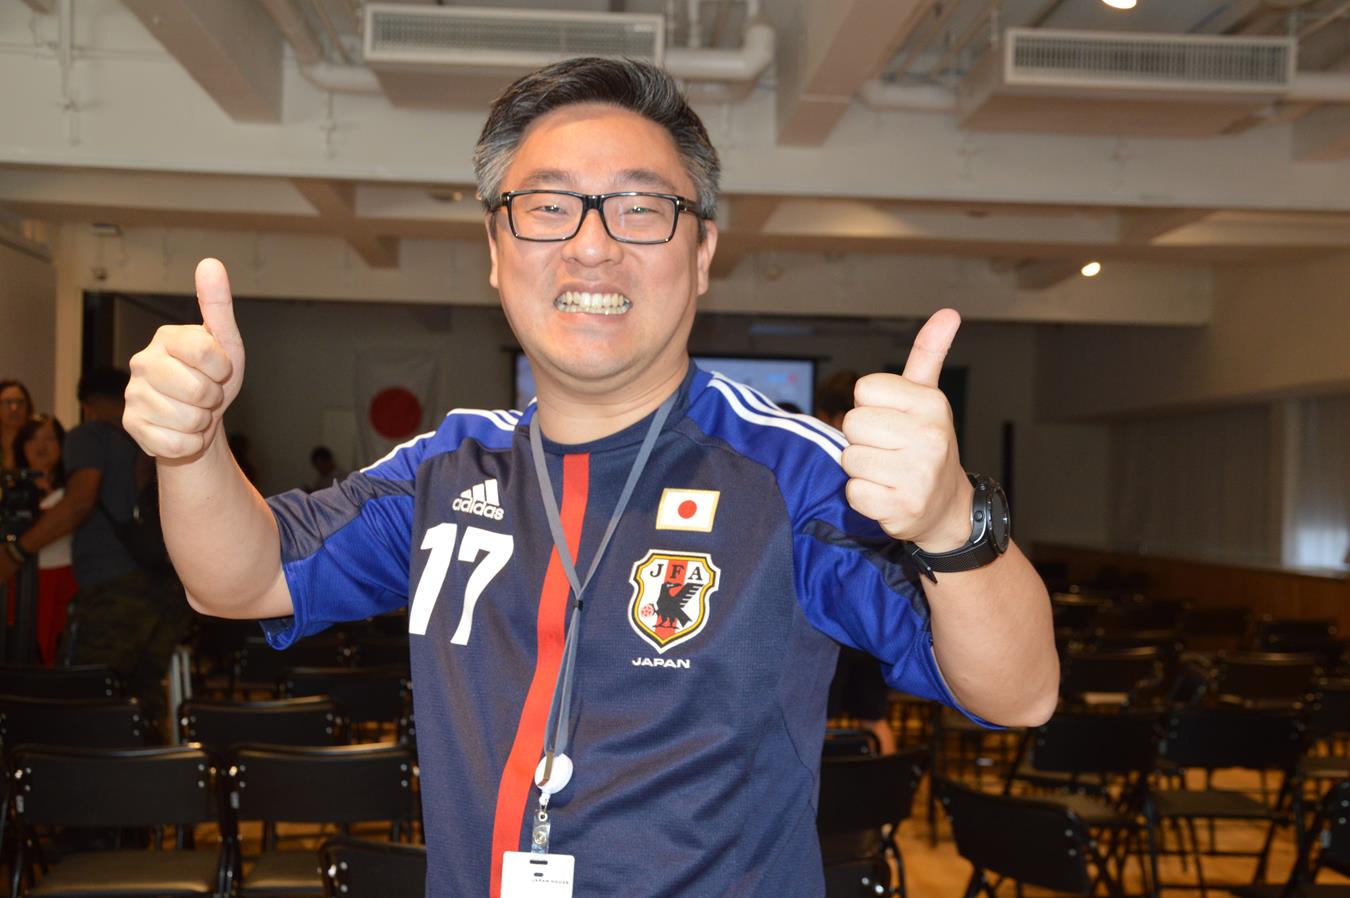 Claudio Kurita muito satisfeito com o resultado 2 x 1 para o Japão. (Foto: Luci Judice Yizima)